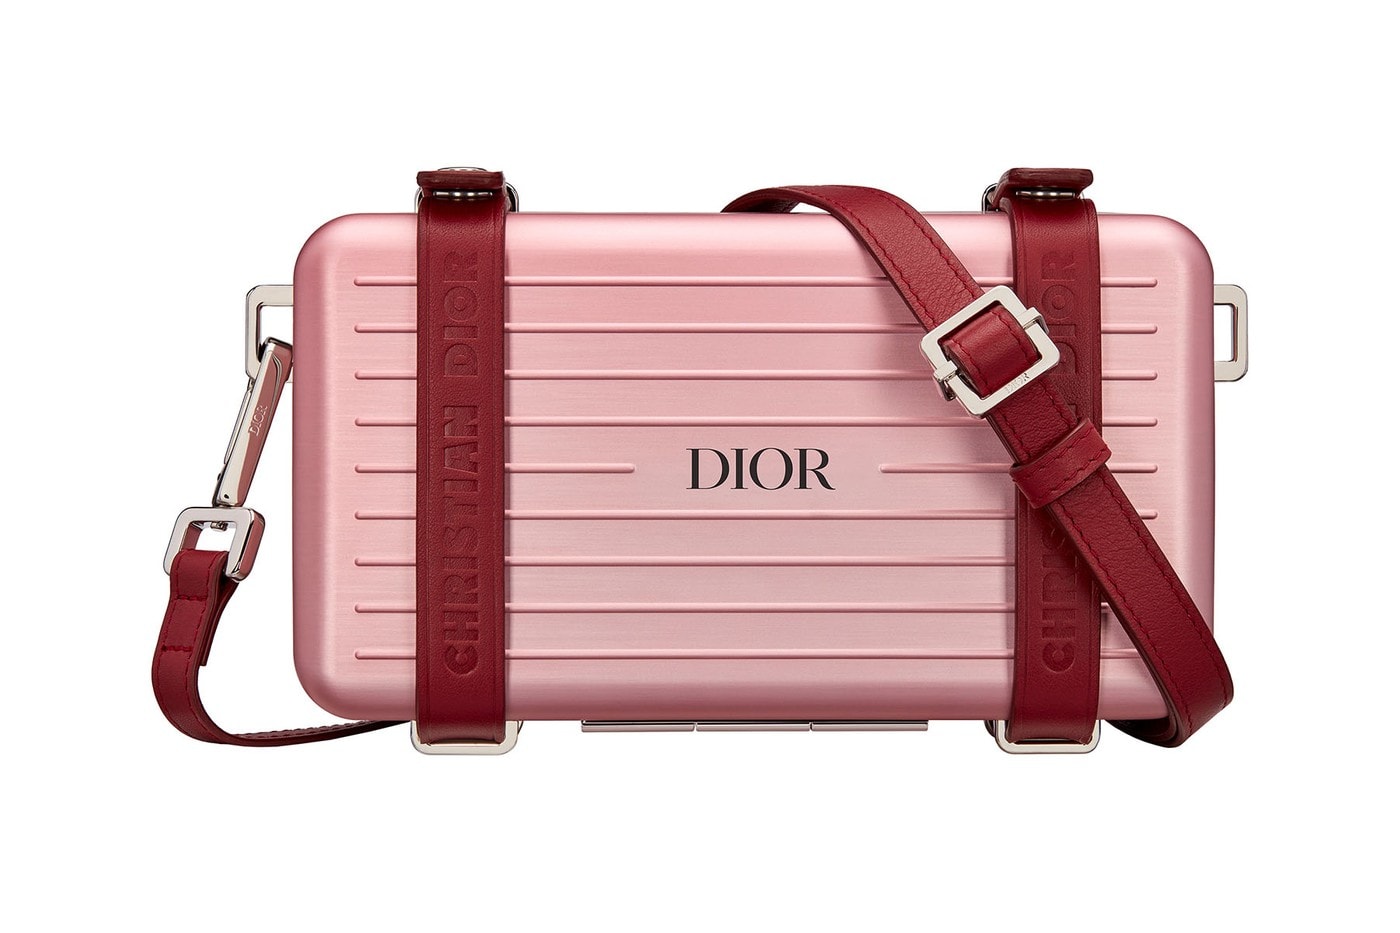 Dior x Rimowa 聯名系列發售情報公開